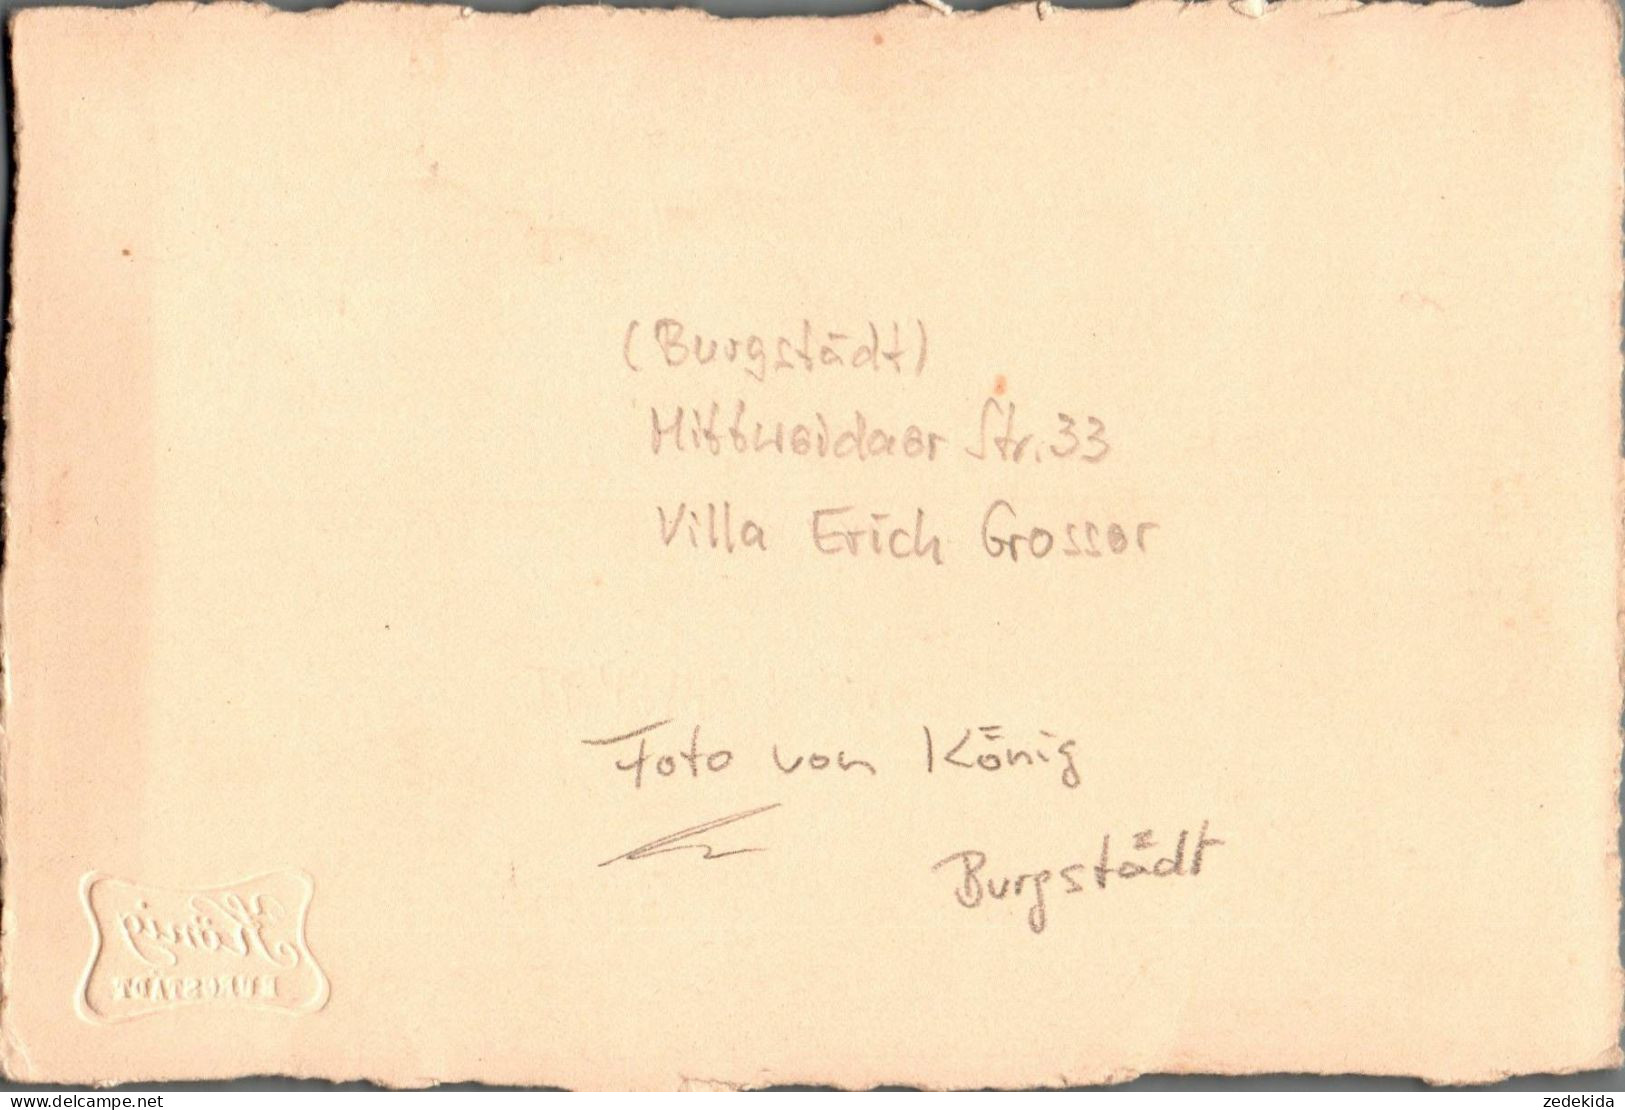 H1704 - Burgstädt Mittweidaer Strasse 33 - Villa Erich Grosser - Foto König - Burgstaedt